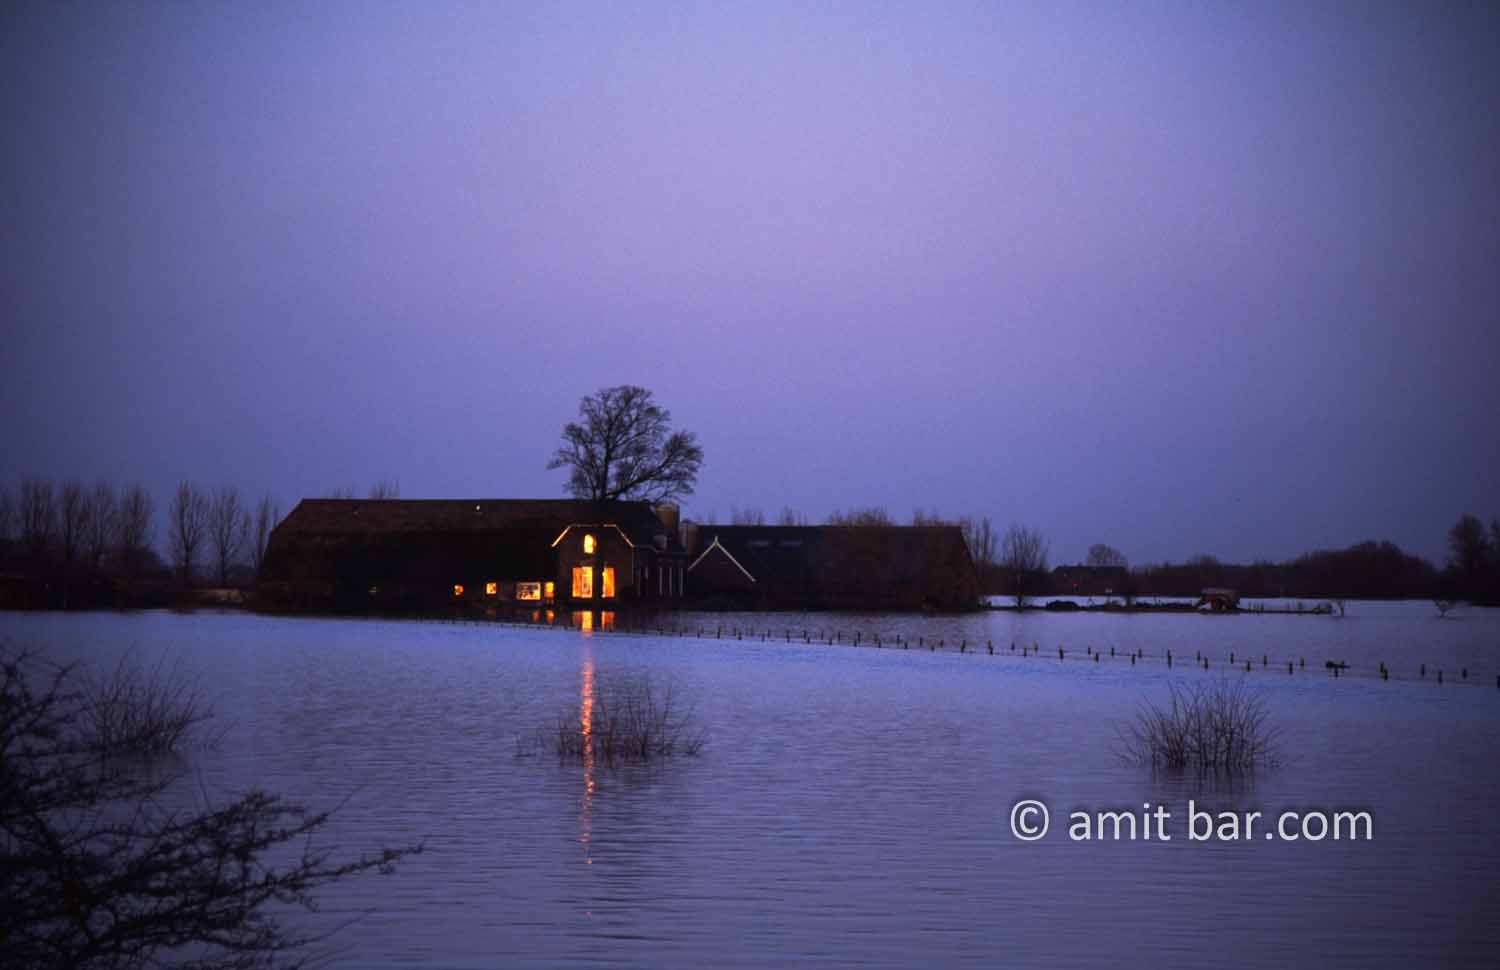 Last sun: Last sun stray on flooded farmhouse by Doesburg, The Netherlands